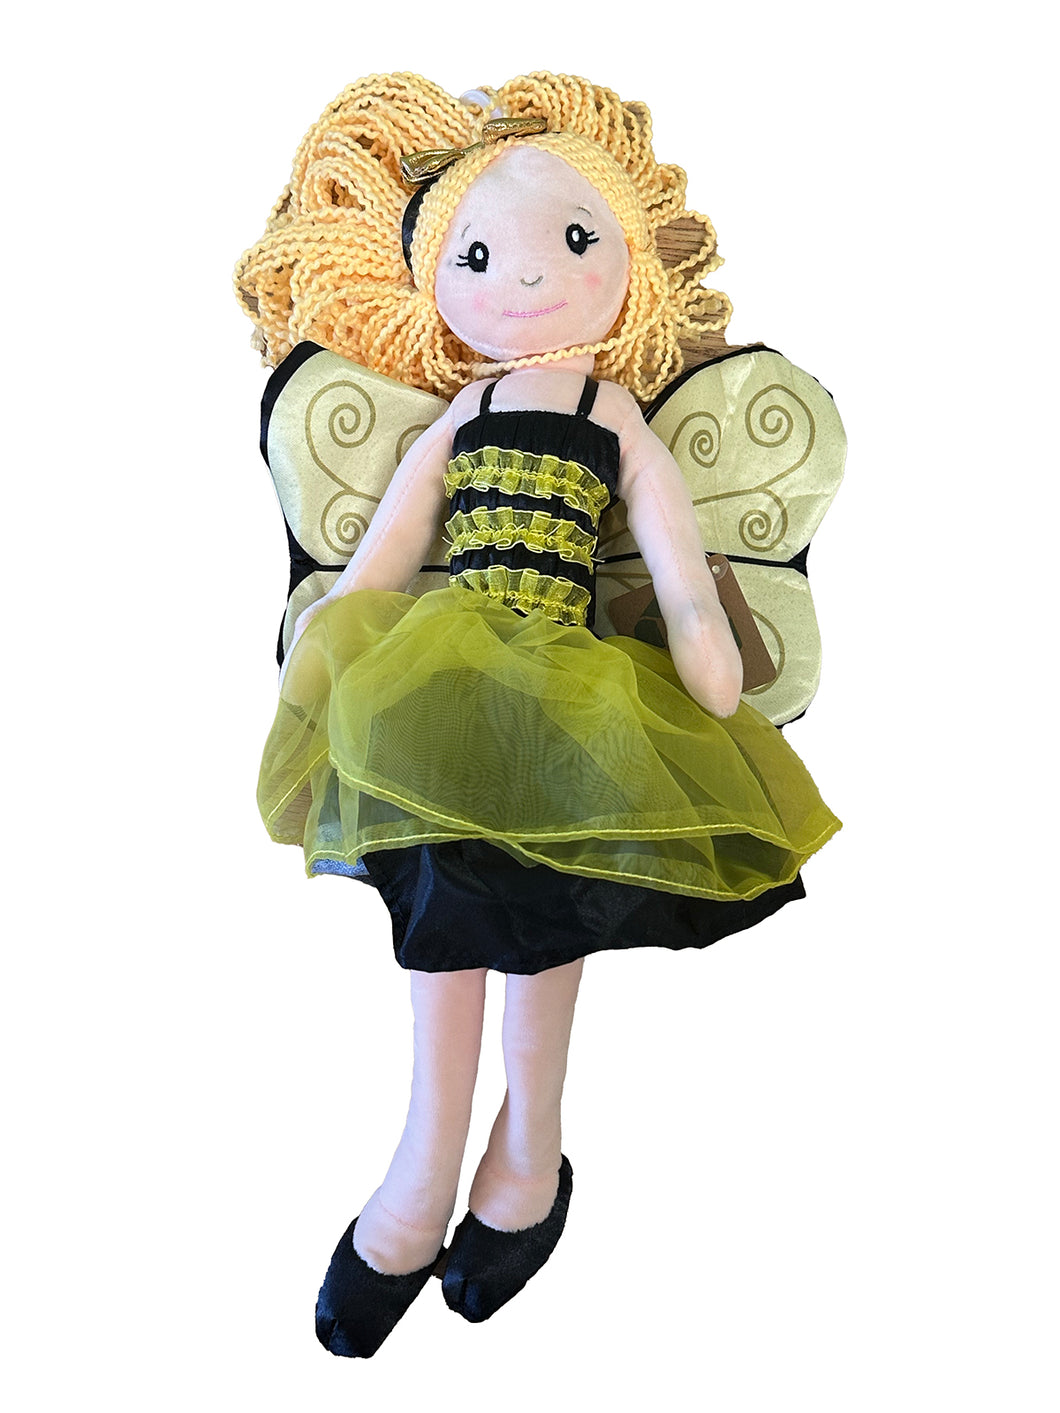 Bumble Bee Plush Doll